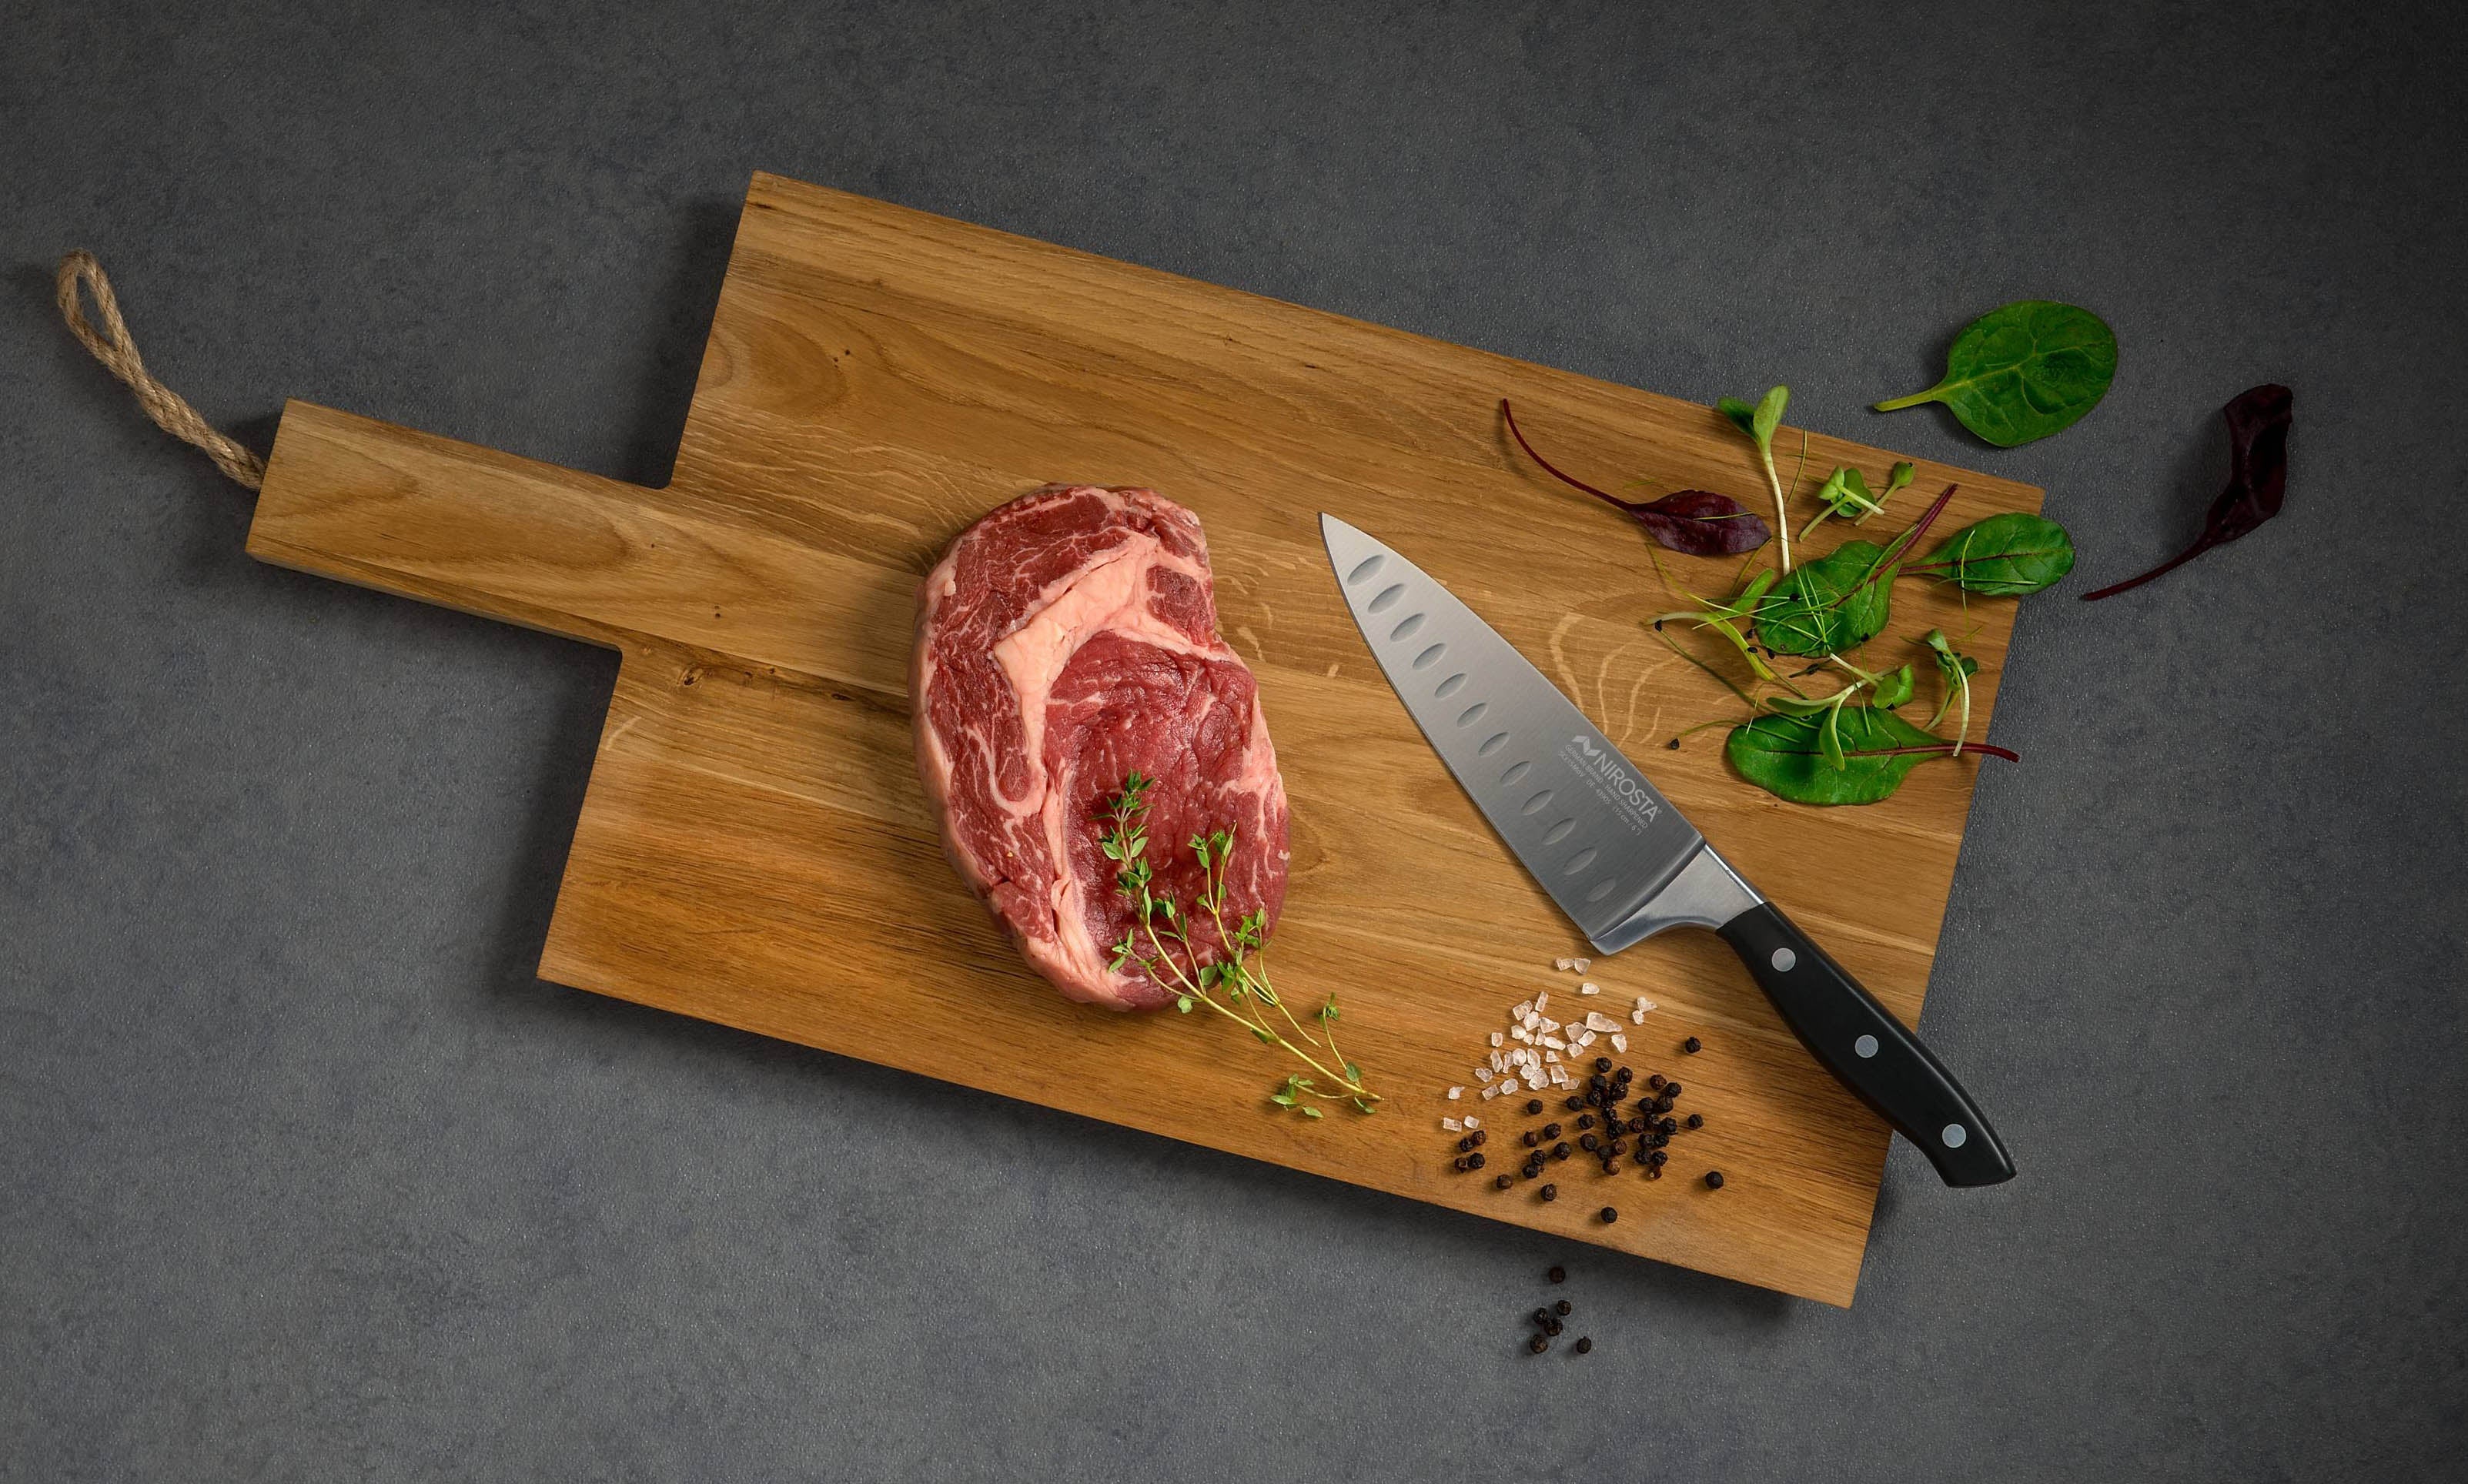 6 X Couteaux à steak lame lisse fabrication française